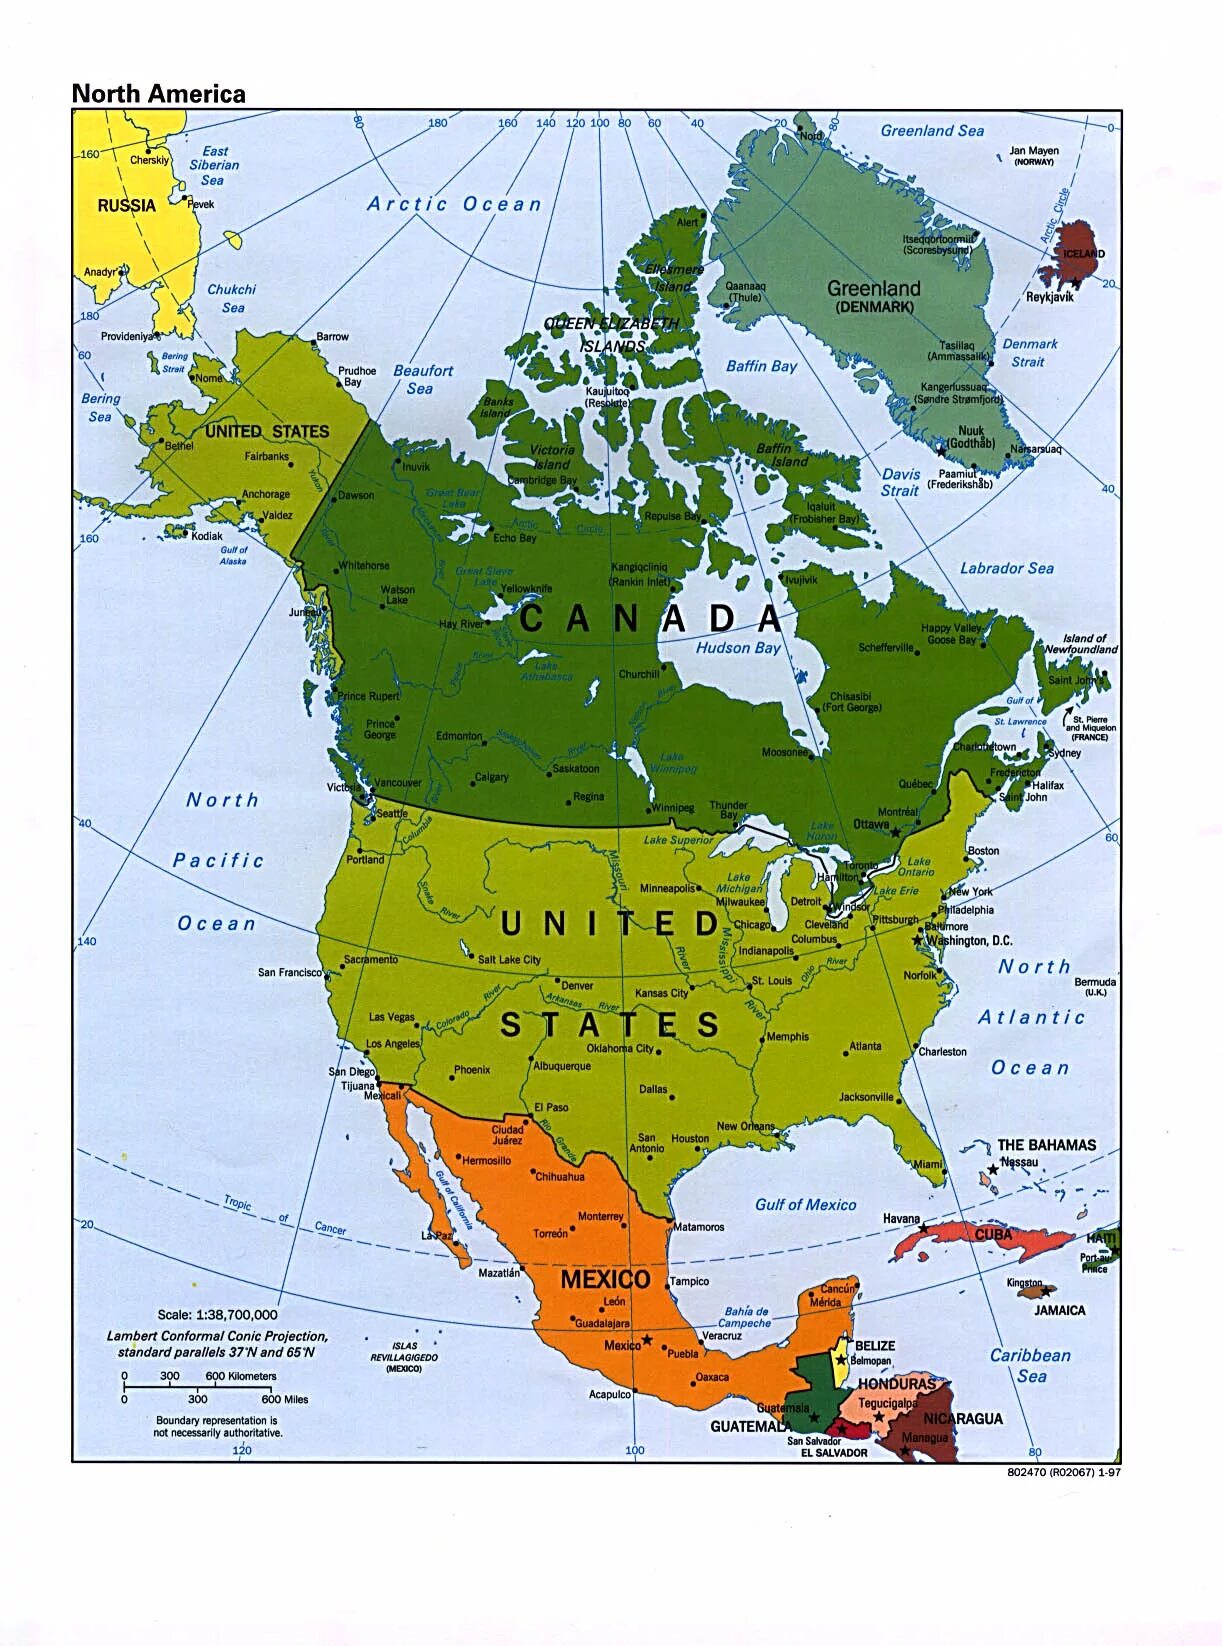 Страны США на карте Северной Америки.